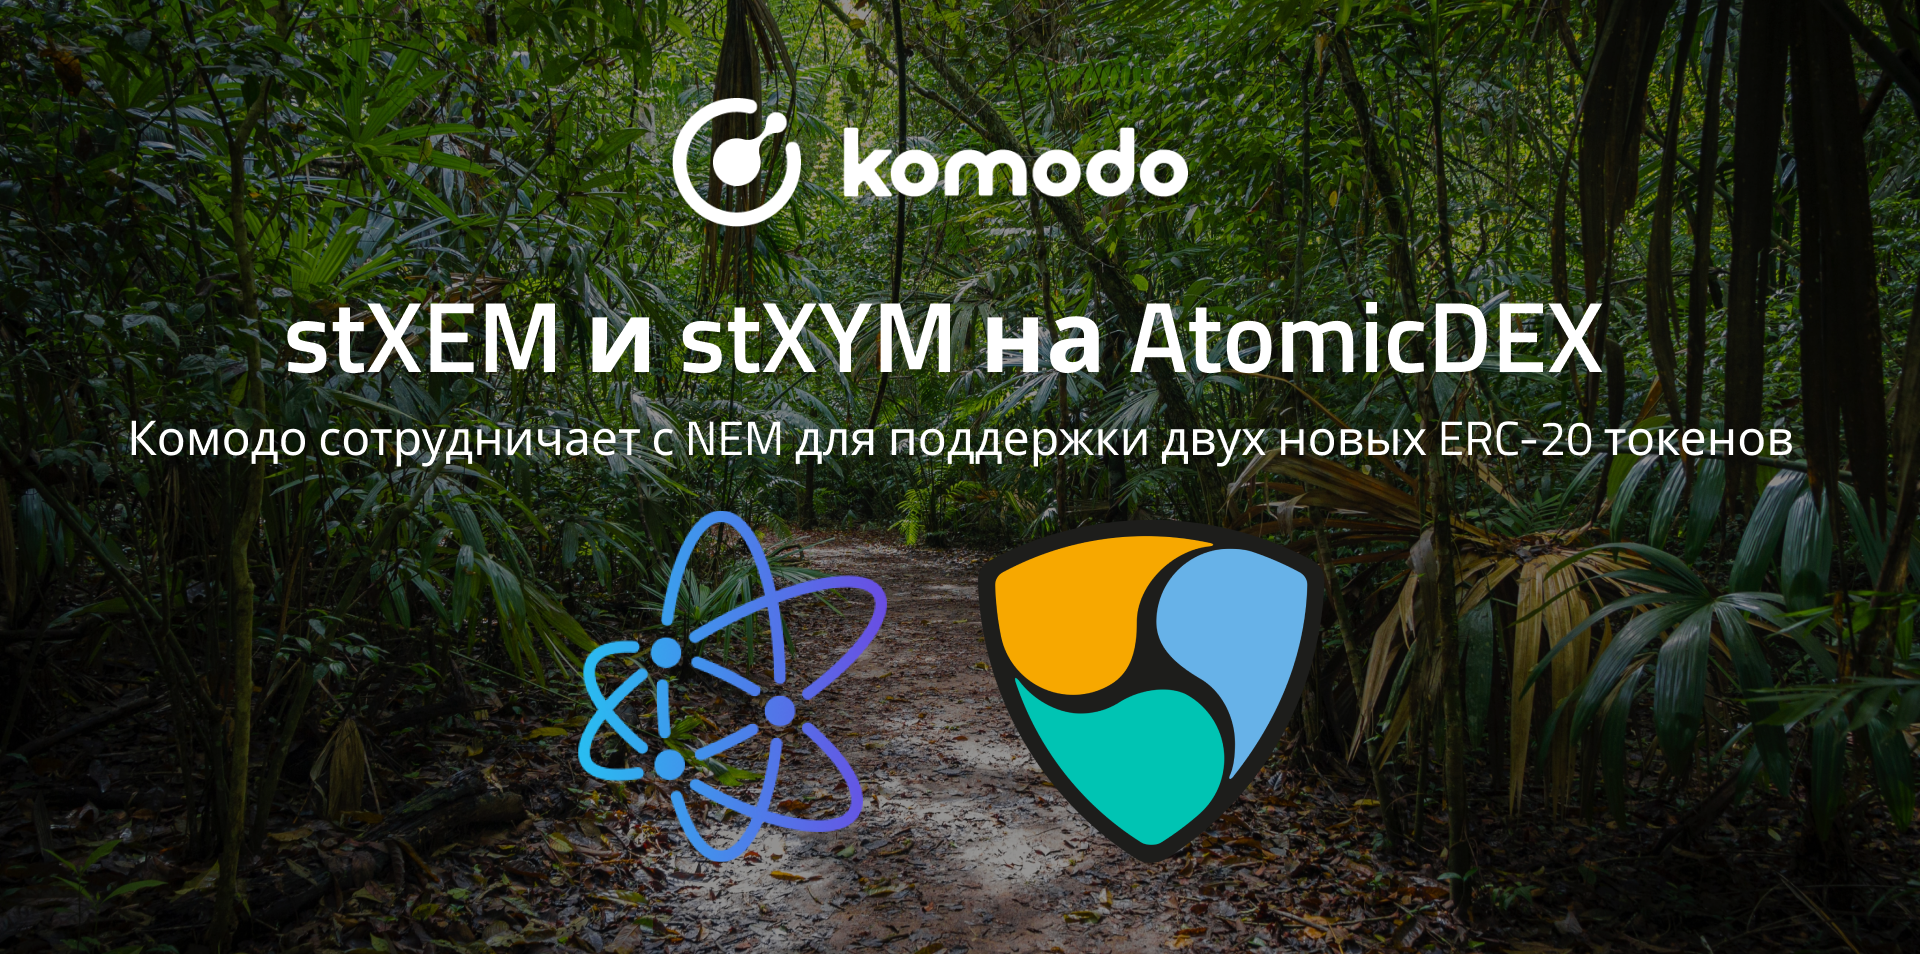 AtomicDEX сотрудничает с NEM для поддержки stXEM и stXYM